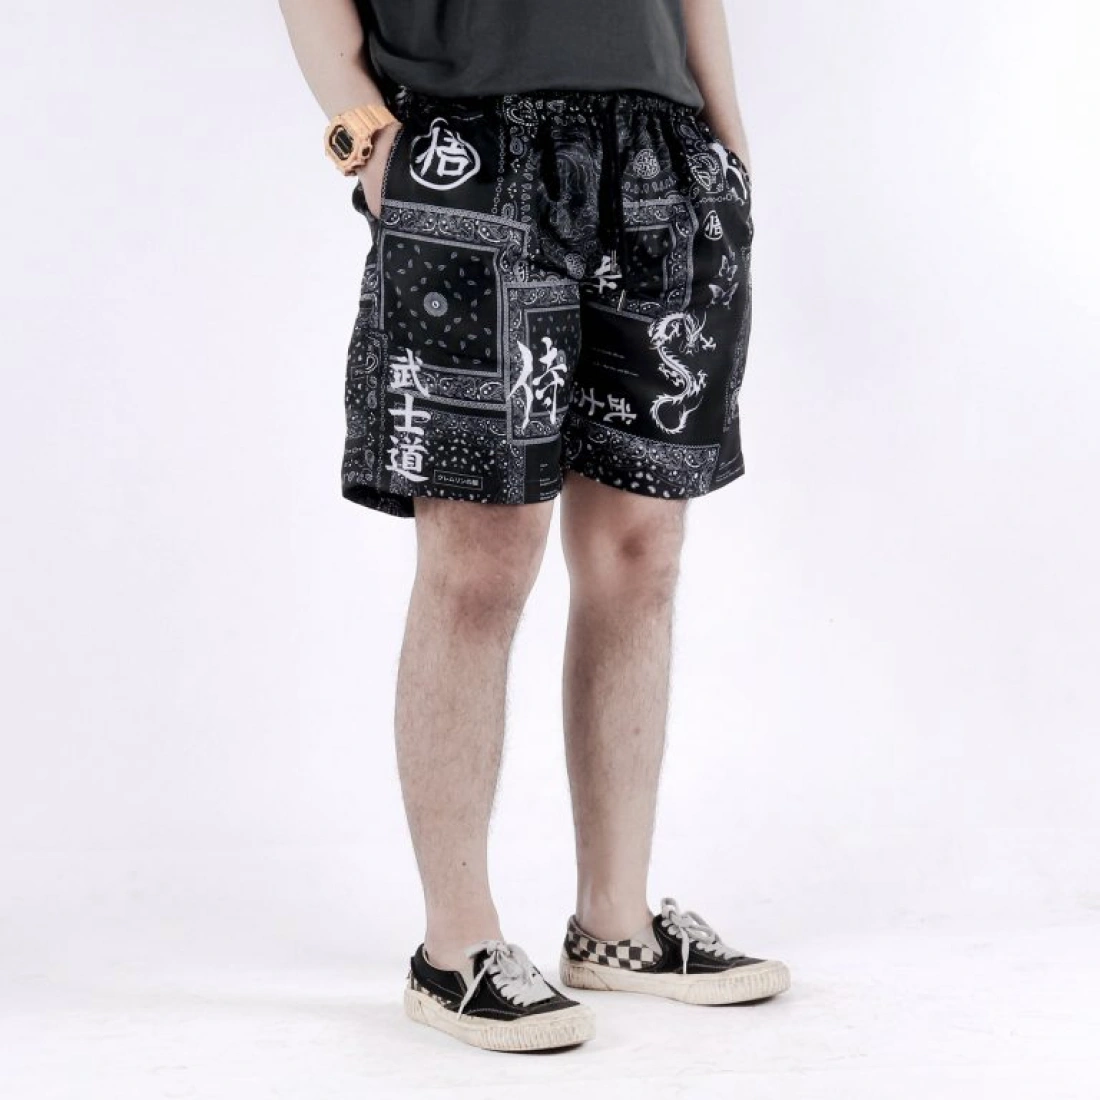 Celana Pendek Hitam Dengan Motif Unik, Cocok Untuk Penggunaan Sehari-Hari Dan Sebagai Merchandise.